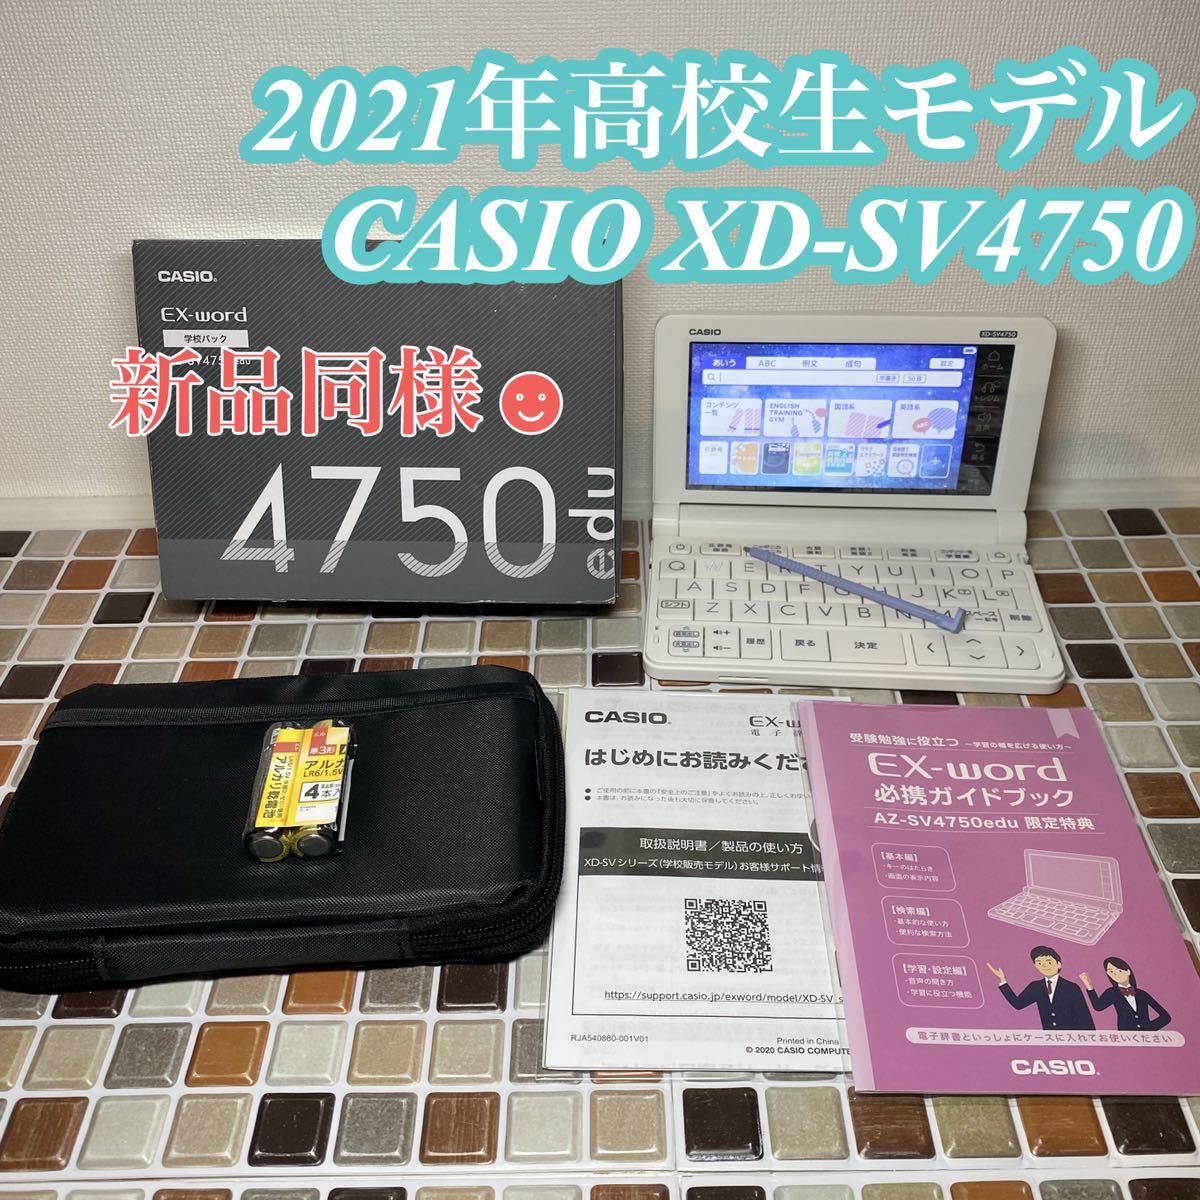 電子辞書CASIO EX-word XD-SV4750 格安新品 62.0%OFF